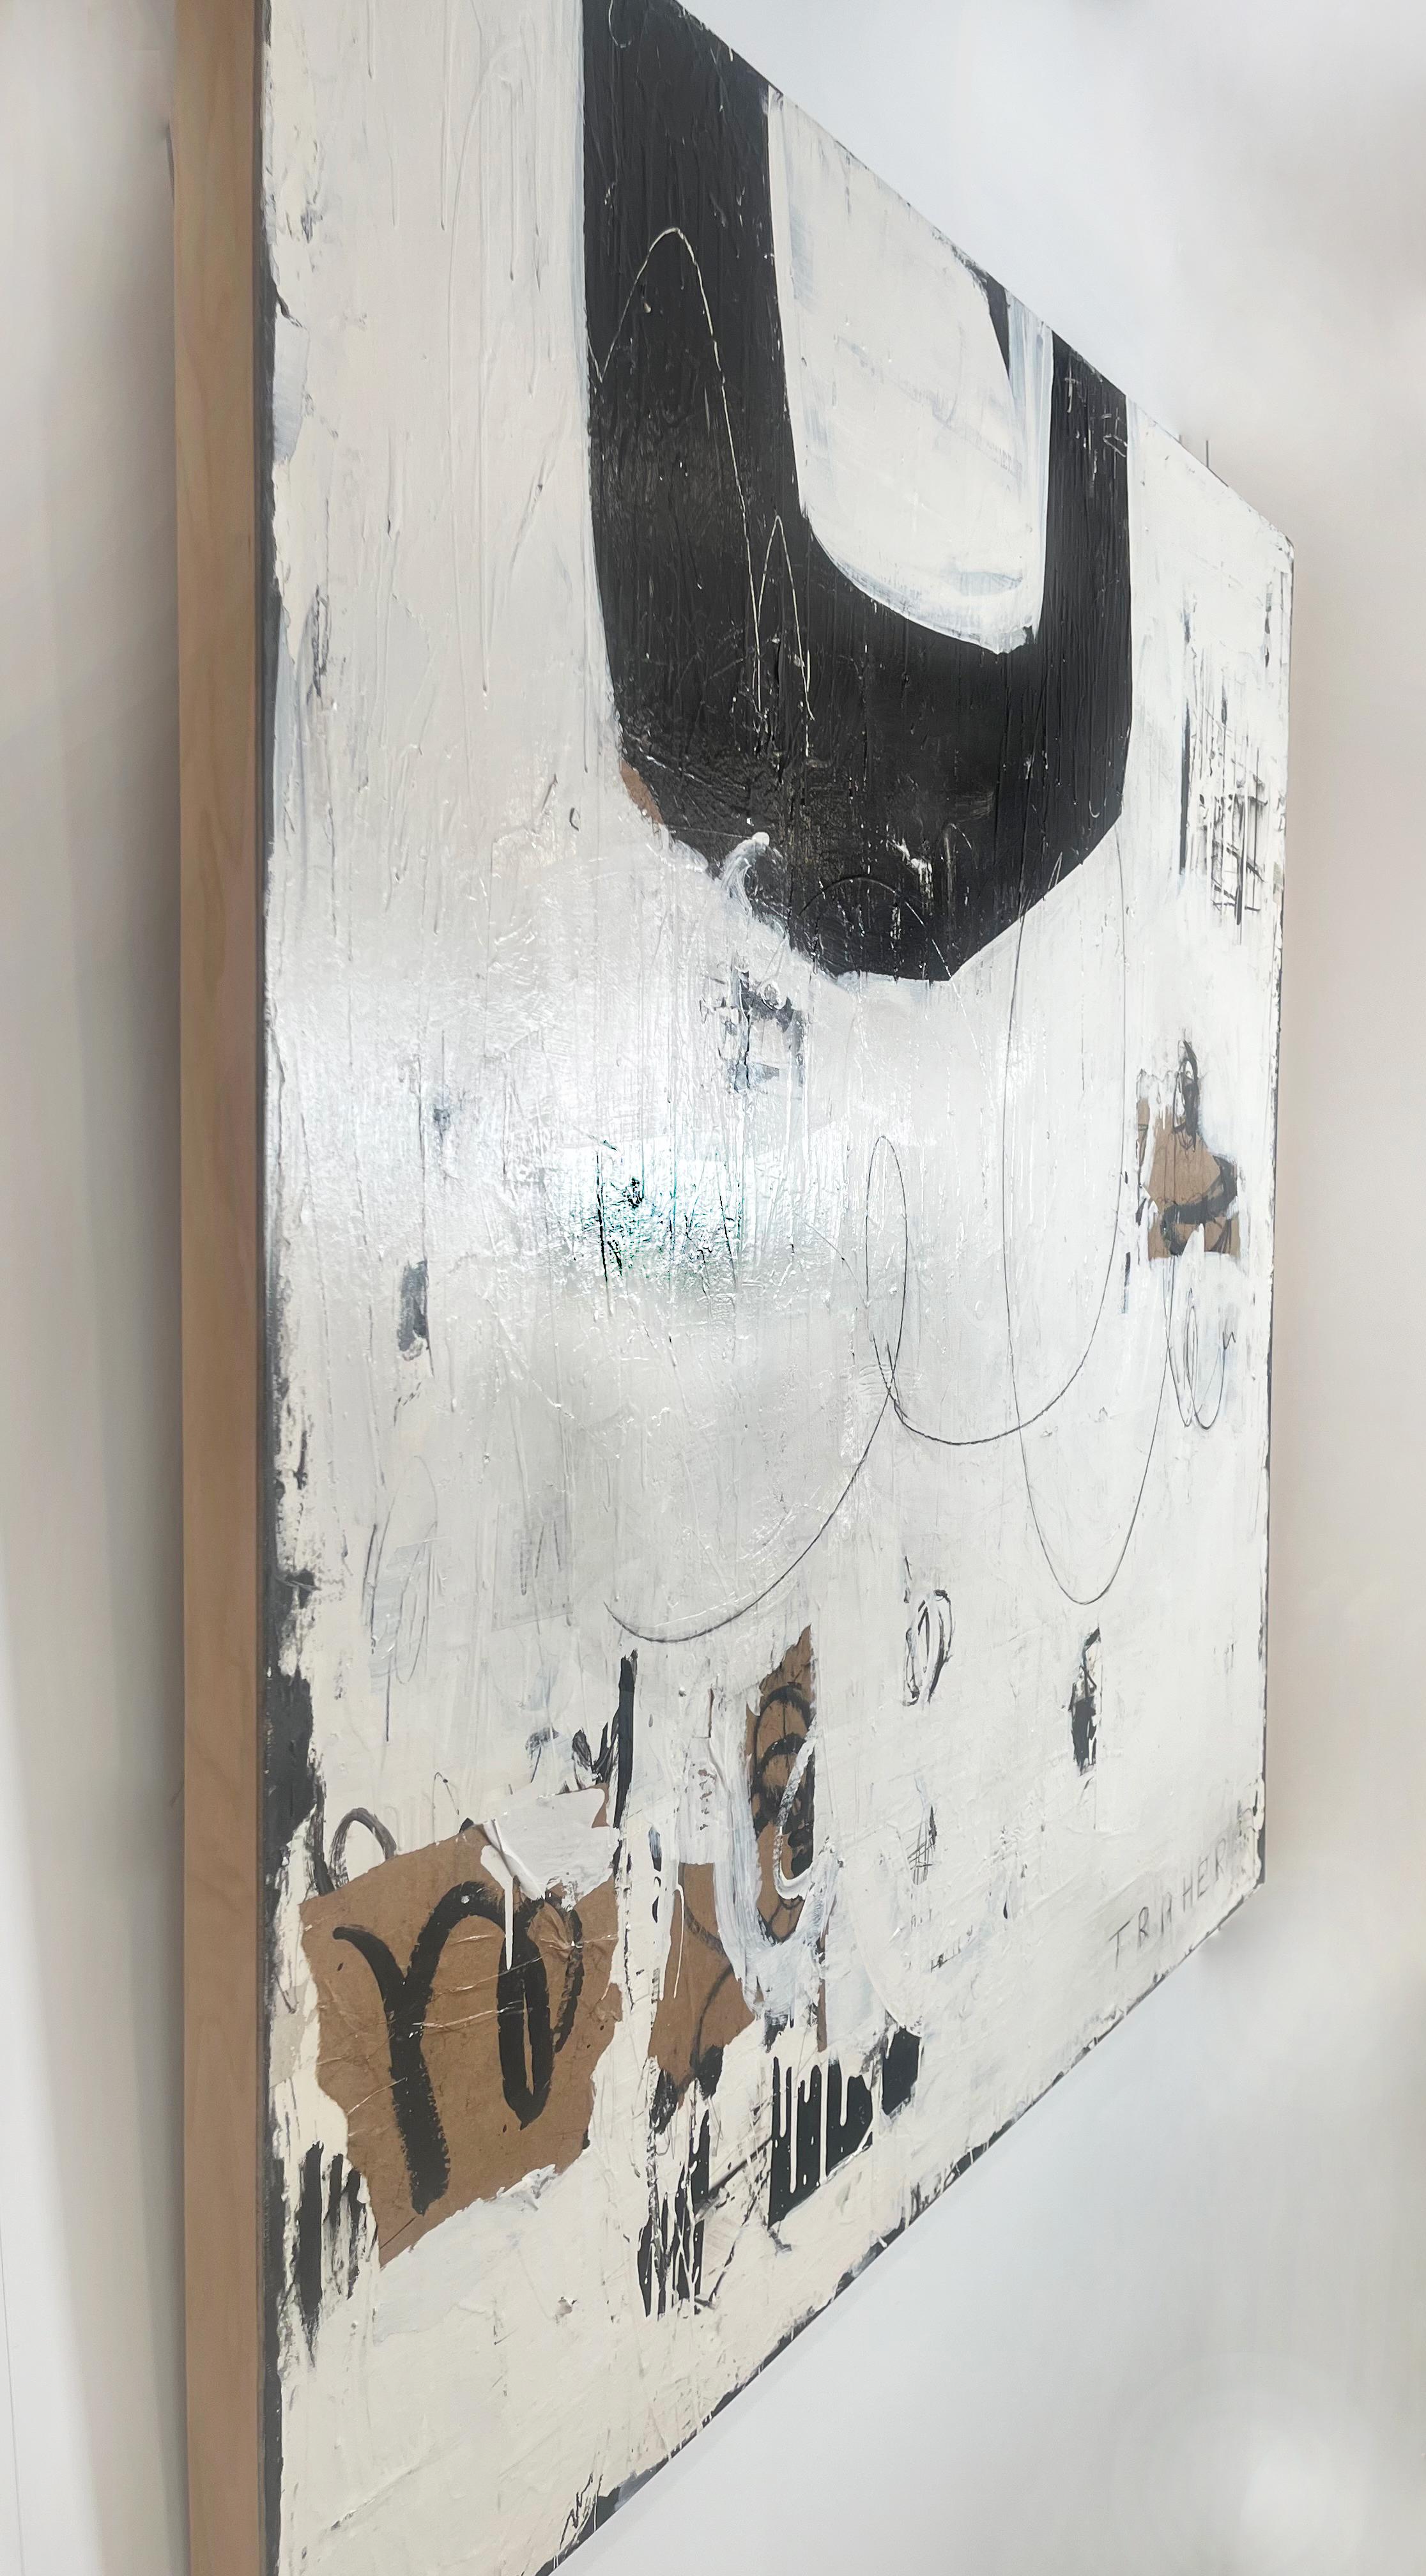 Sag, was du zu sagen hast, große abstrakte Textur auf Tafel, schwarz, weiß, braun – Painting von Miriam Traher